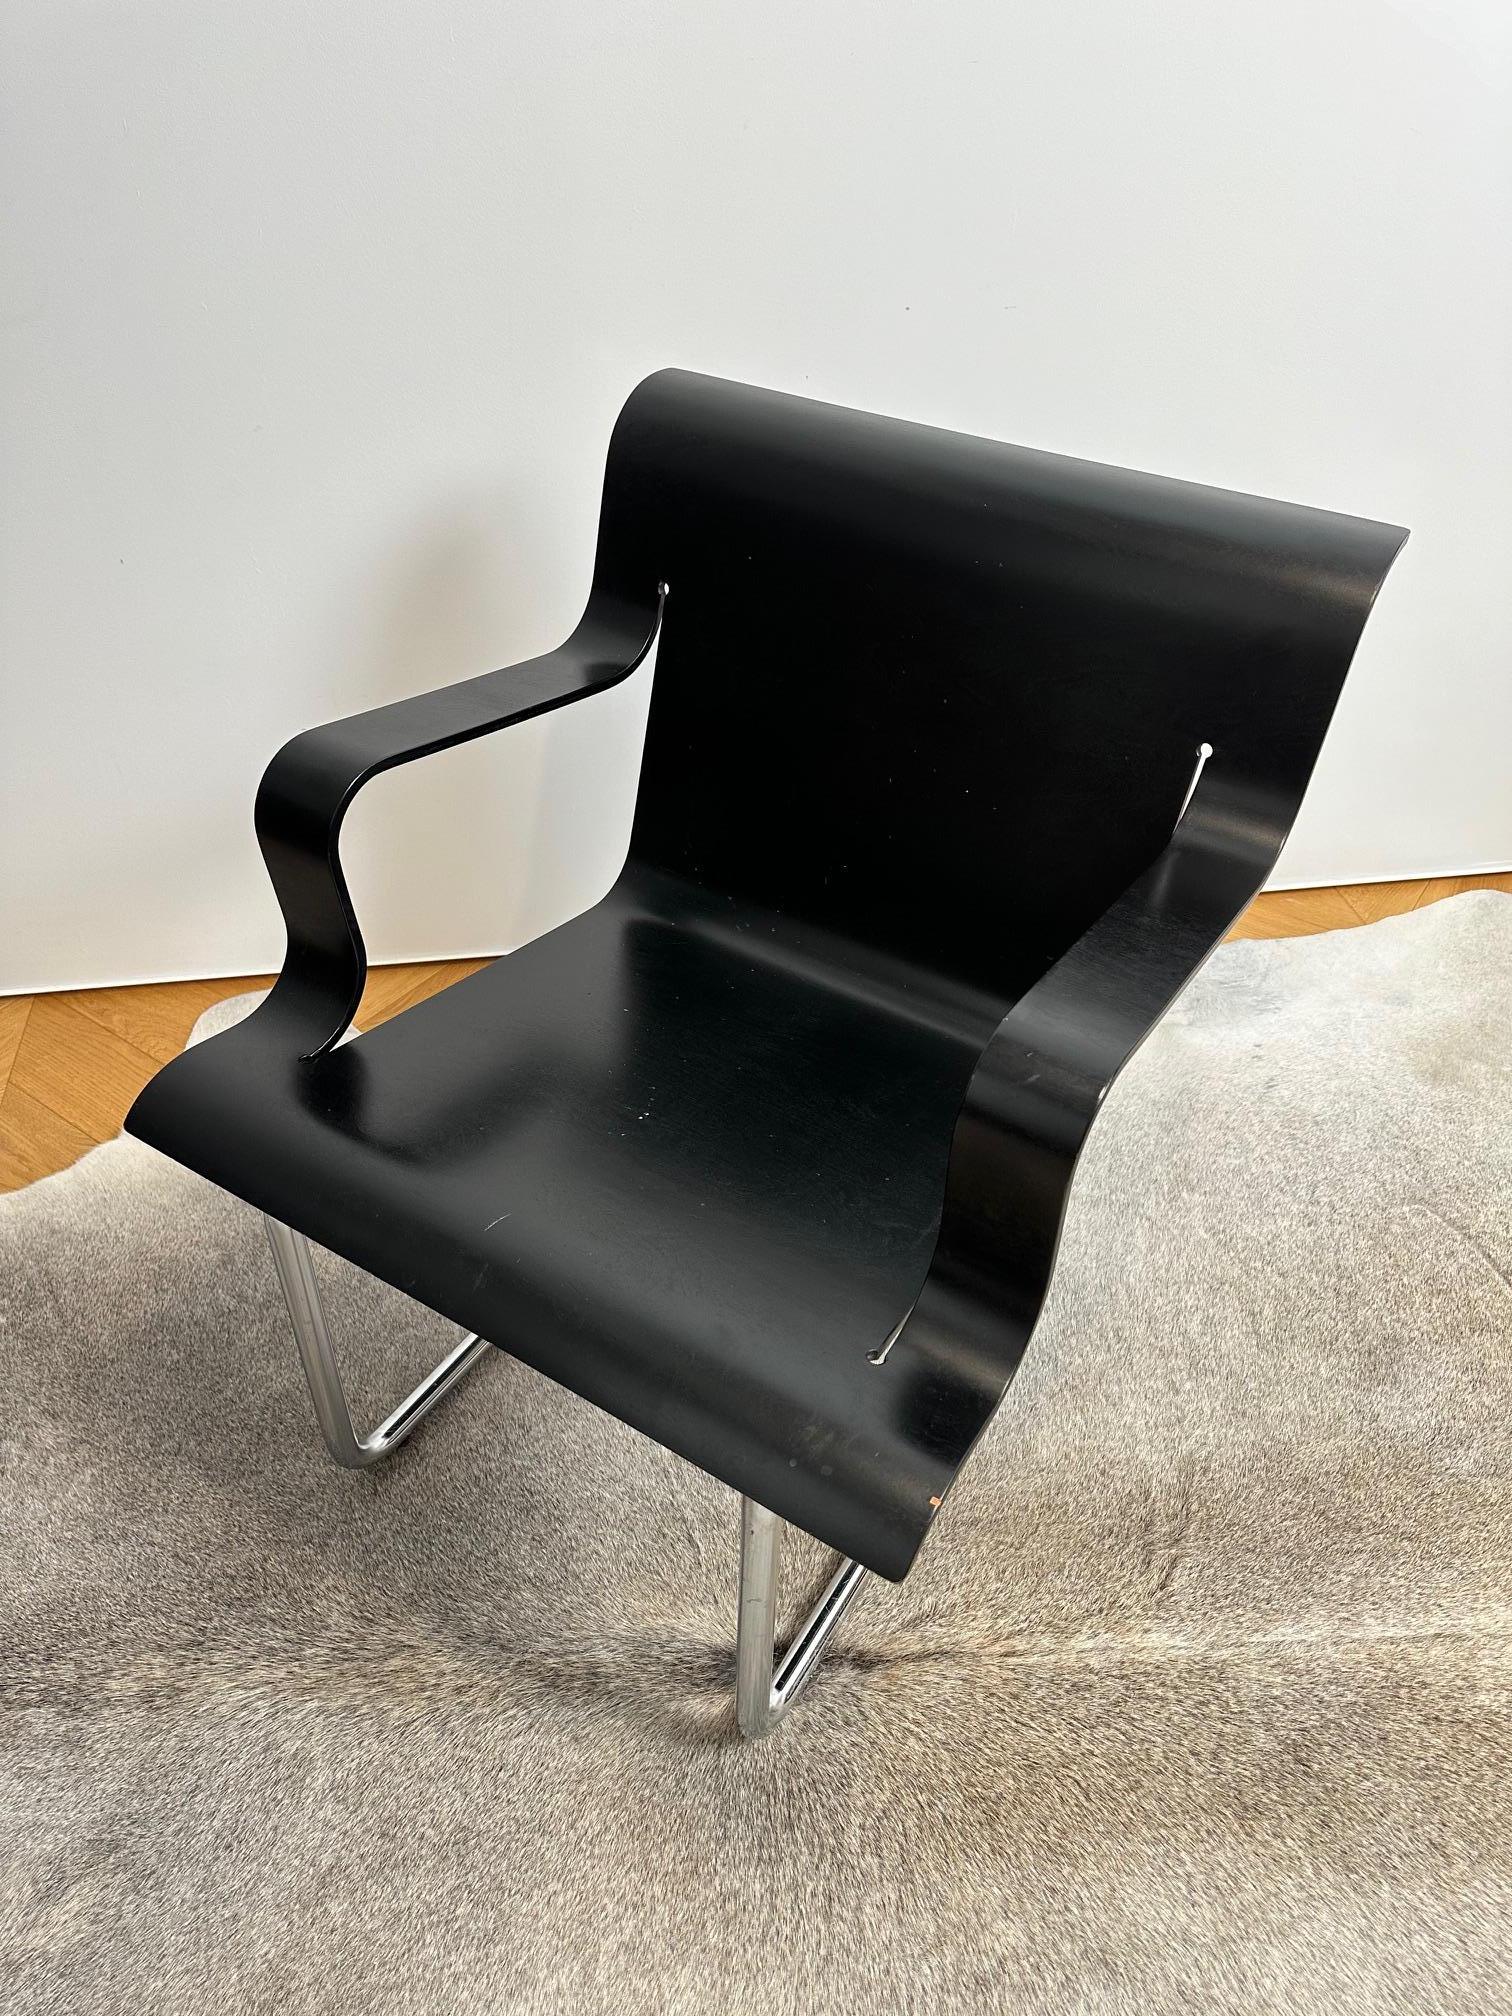 Le fauteuil Model 26, très difficile à trouver, a été conçu par Alvar Aalto pour Artek. Sa structure est en tube d'acier, peint en noir mat, et son assise est en contreplaqué de bouleau pressé, laqué en noir.

Aalto a conçu la Lounge Chair 26 en